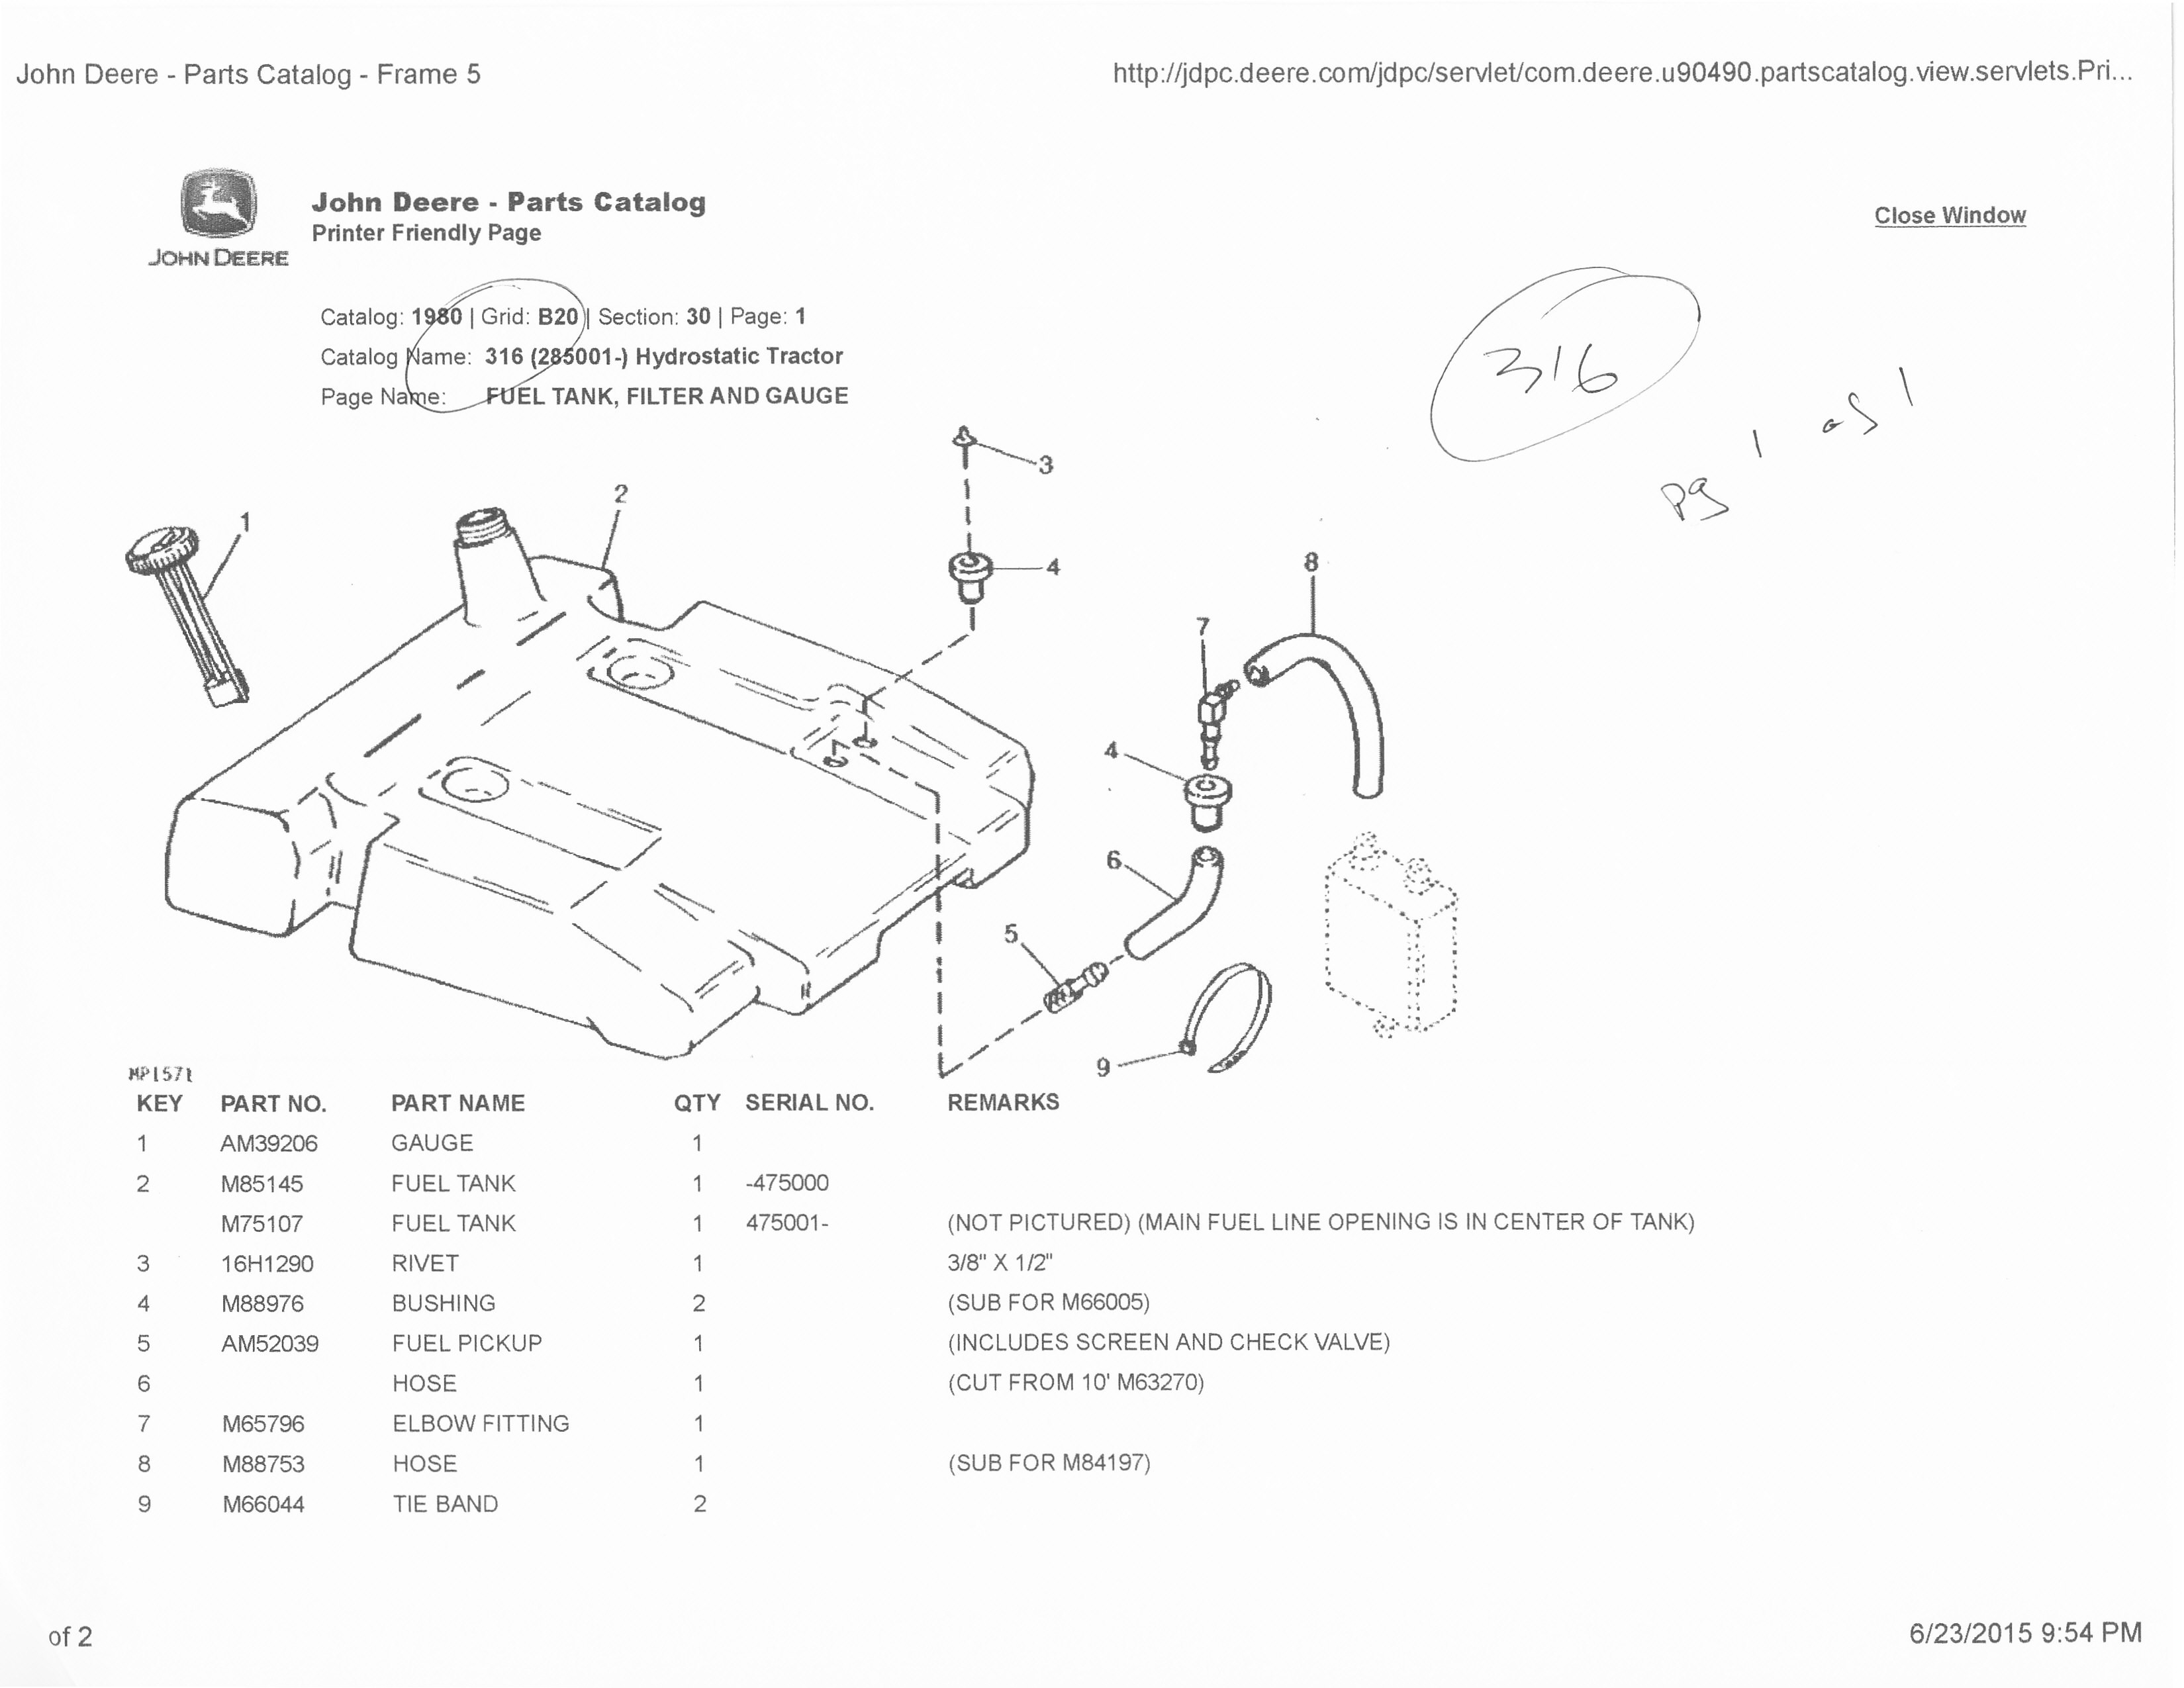 Wiring Diagram 318 John Deere Need Help Finding 318 Fuel Tank Parts Of Wiring Diagram 318 John Deere